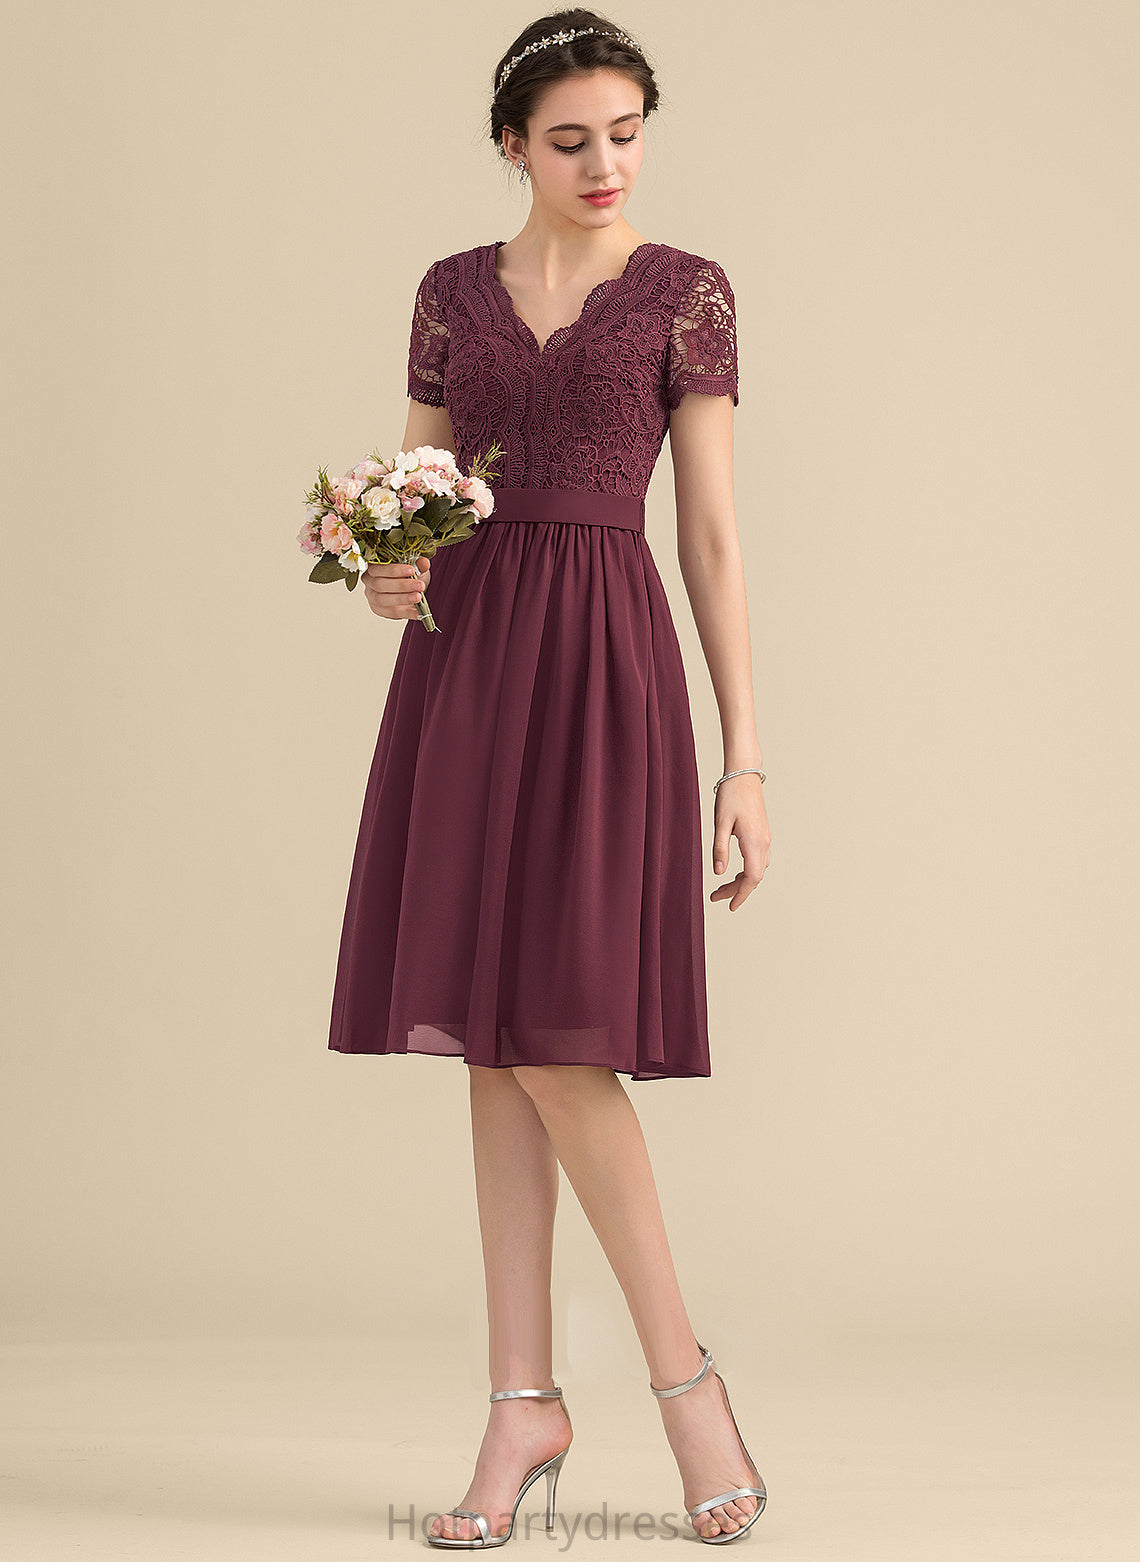 Knee-Length Neckline A-Line V-neck Lace Silhouette Length Straps Fabric Asia Floor Length Sleeveless Bridesmaid Dresses